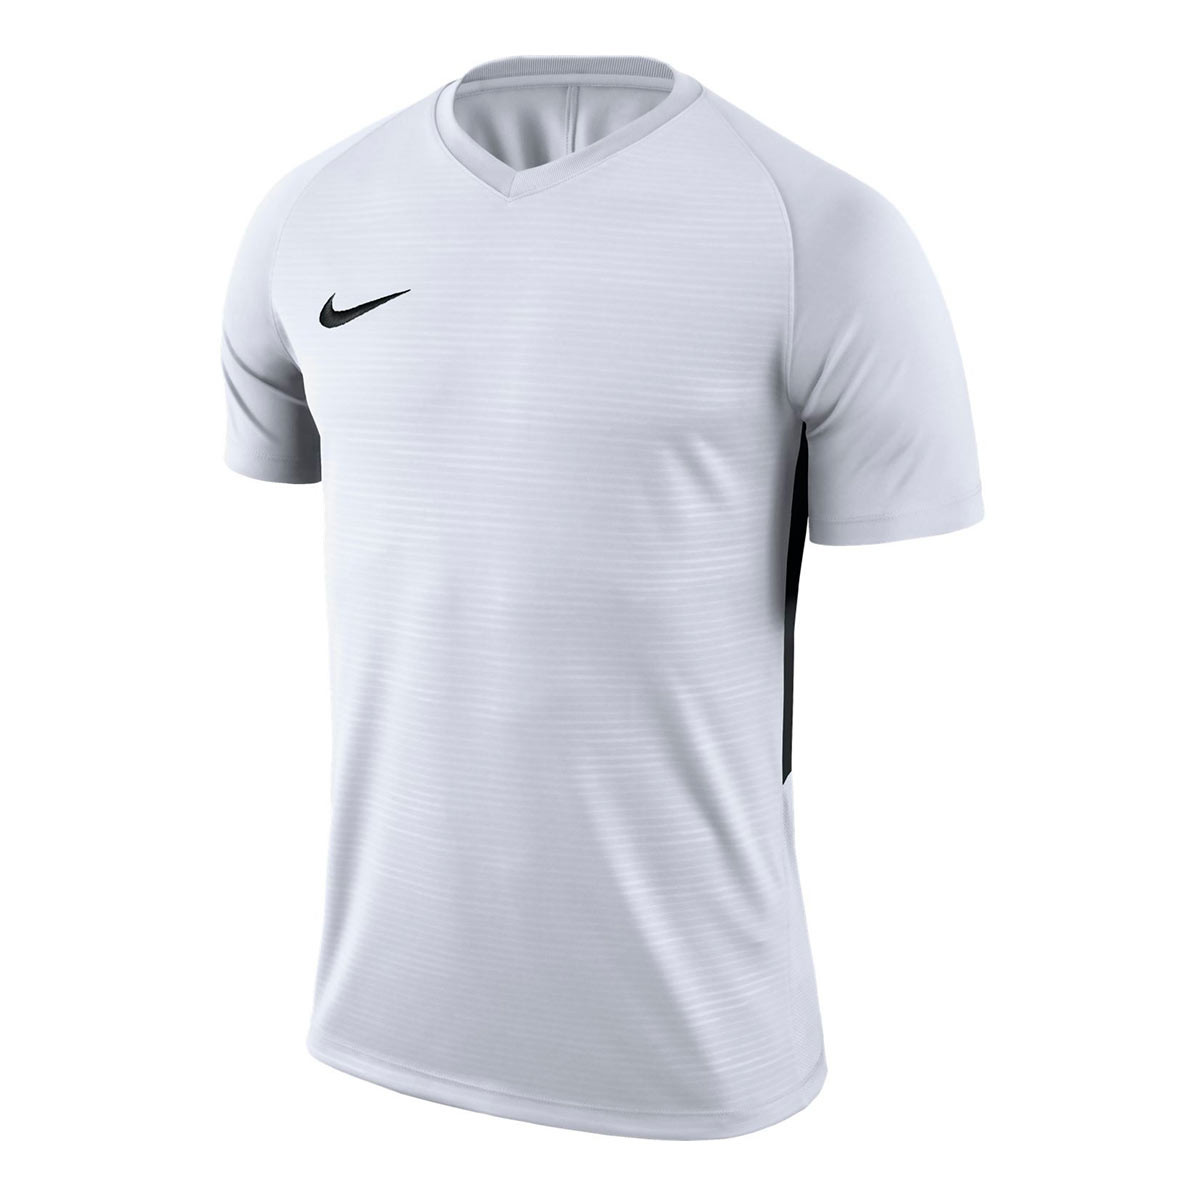 Camiseta Nike Tiempo Premier m/c White-Black - Tienda de fútbol Fútbol  Emotion